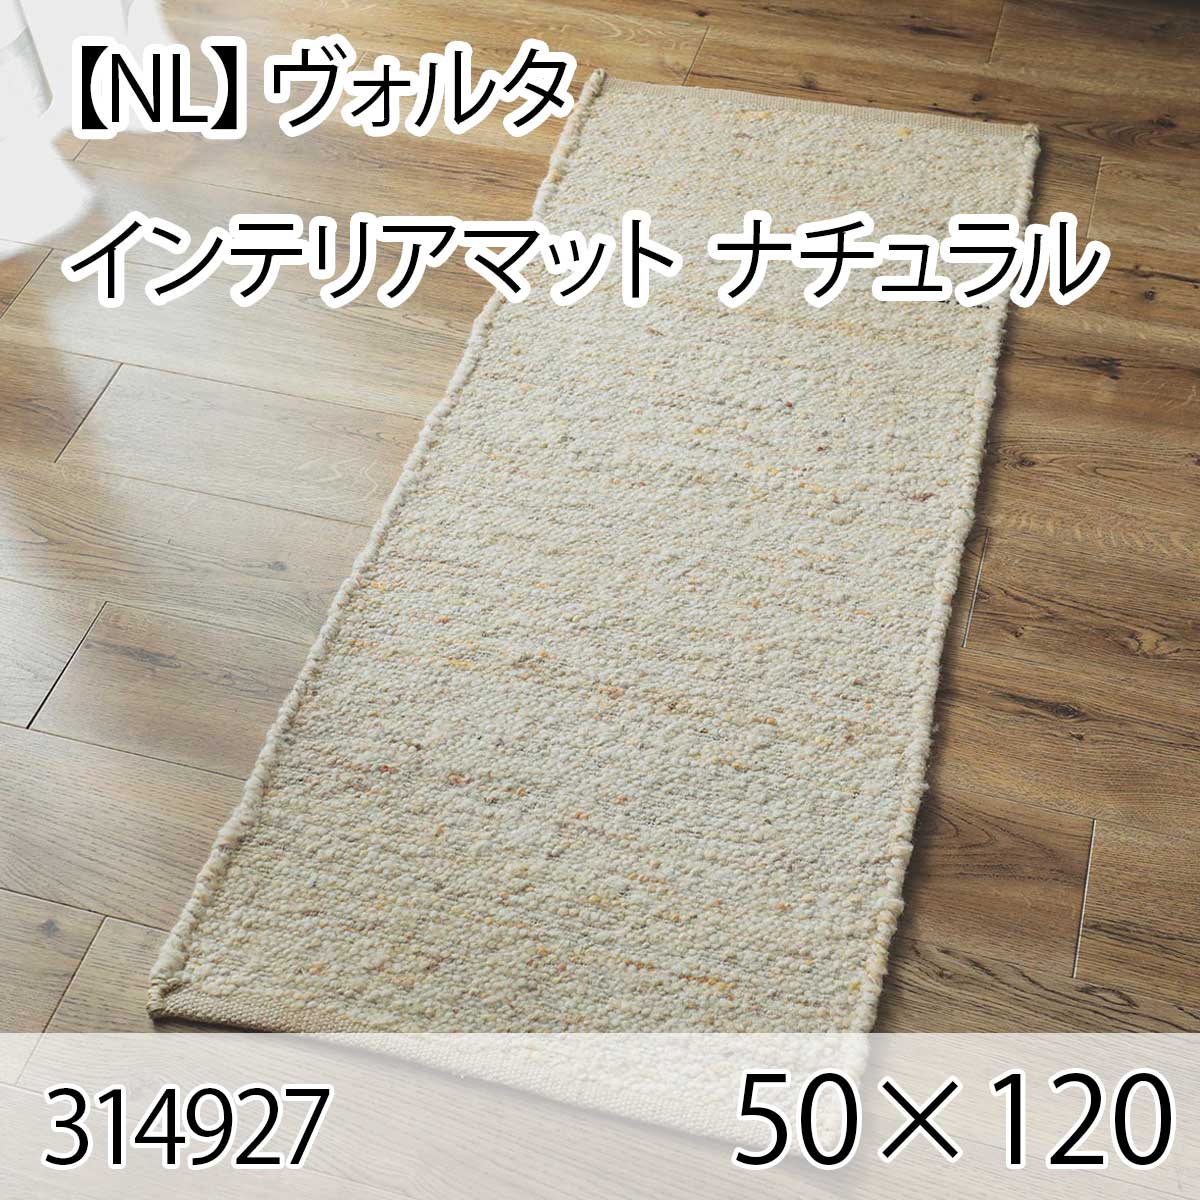 【NL】ヴォルタ インテリアマット 50cmx120cm ナチュラル